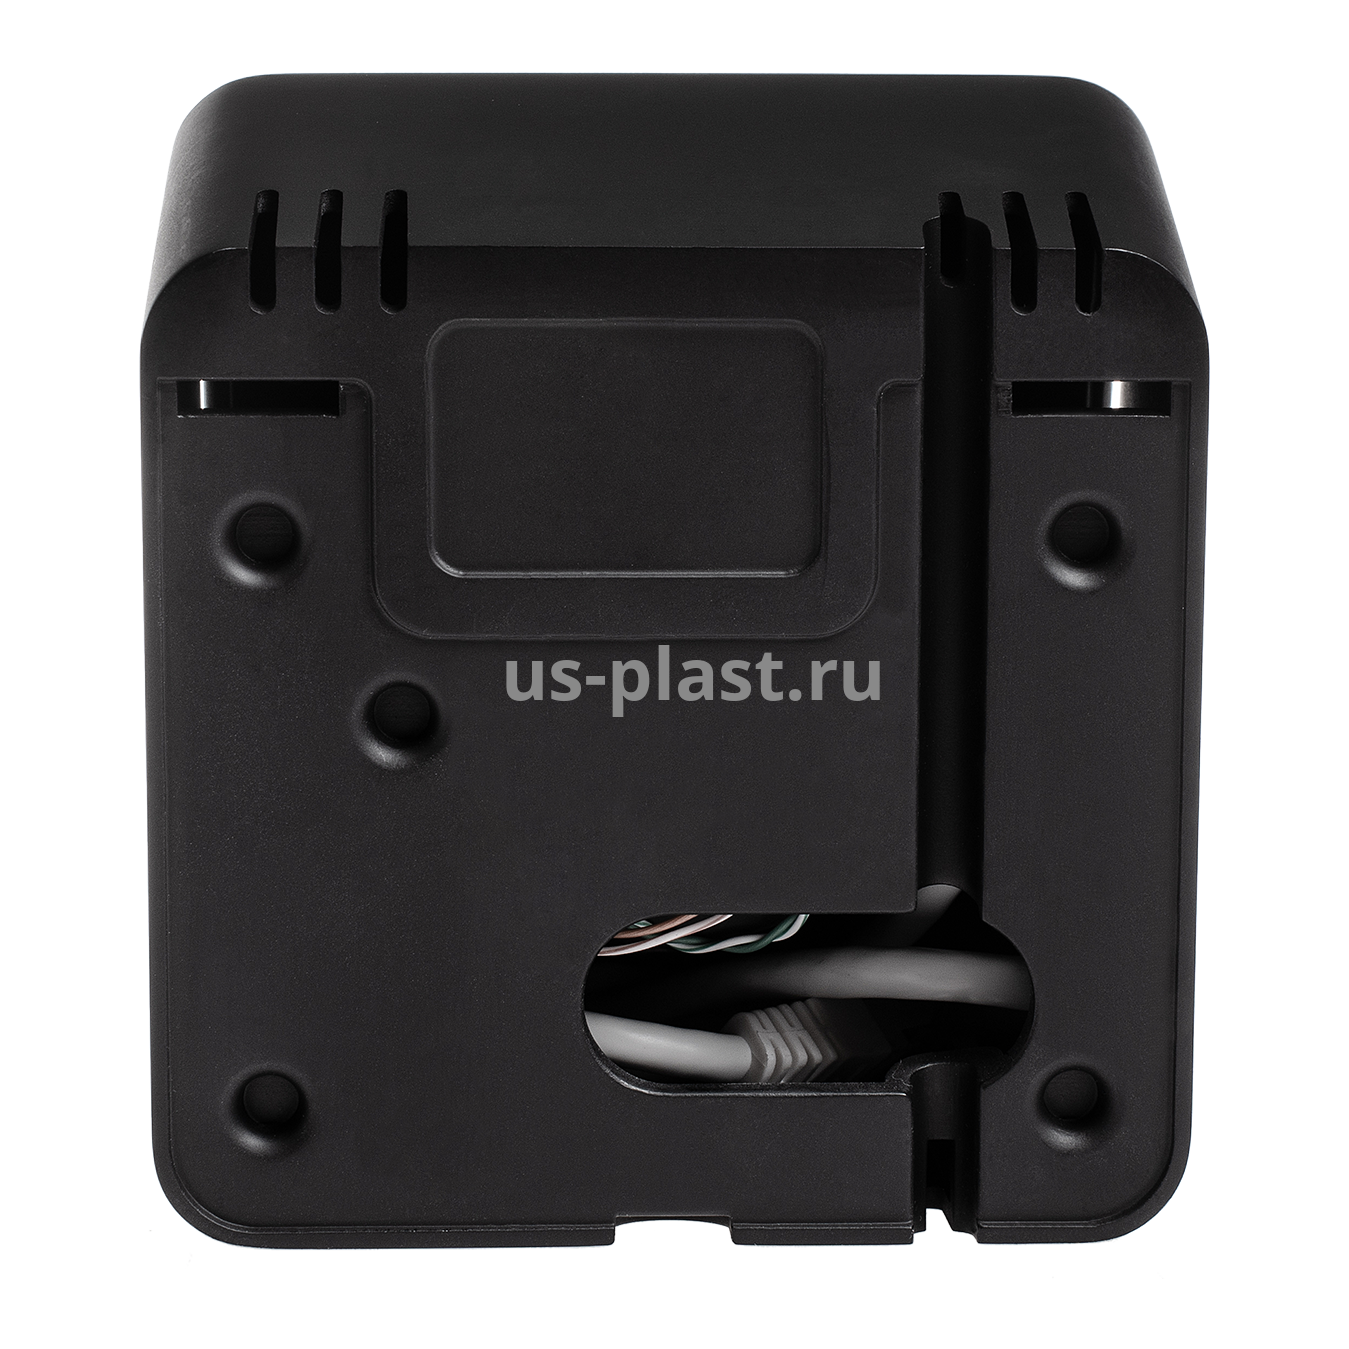 BioSmart PALMJET BOX-Т, биометрический считыватель вен ладони и RFID-карт с дистанционной термометрией. Фото N5